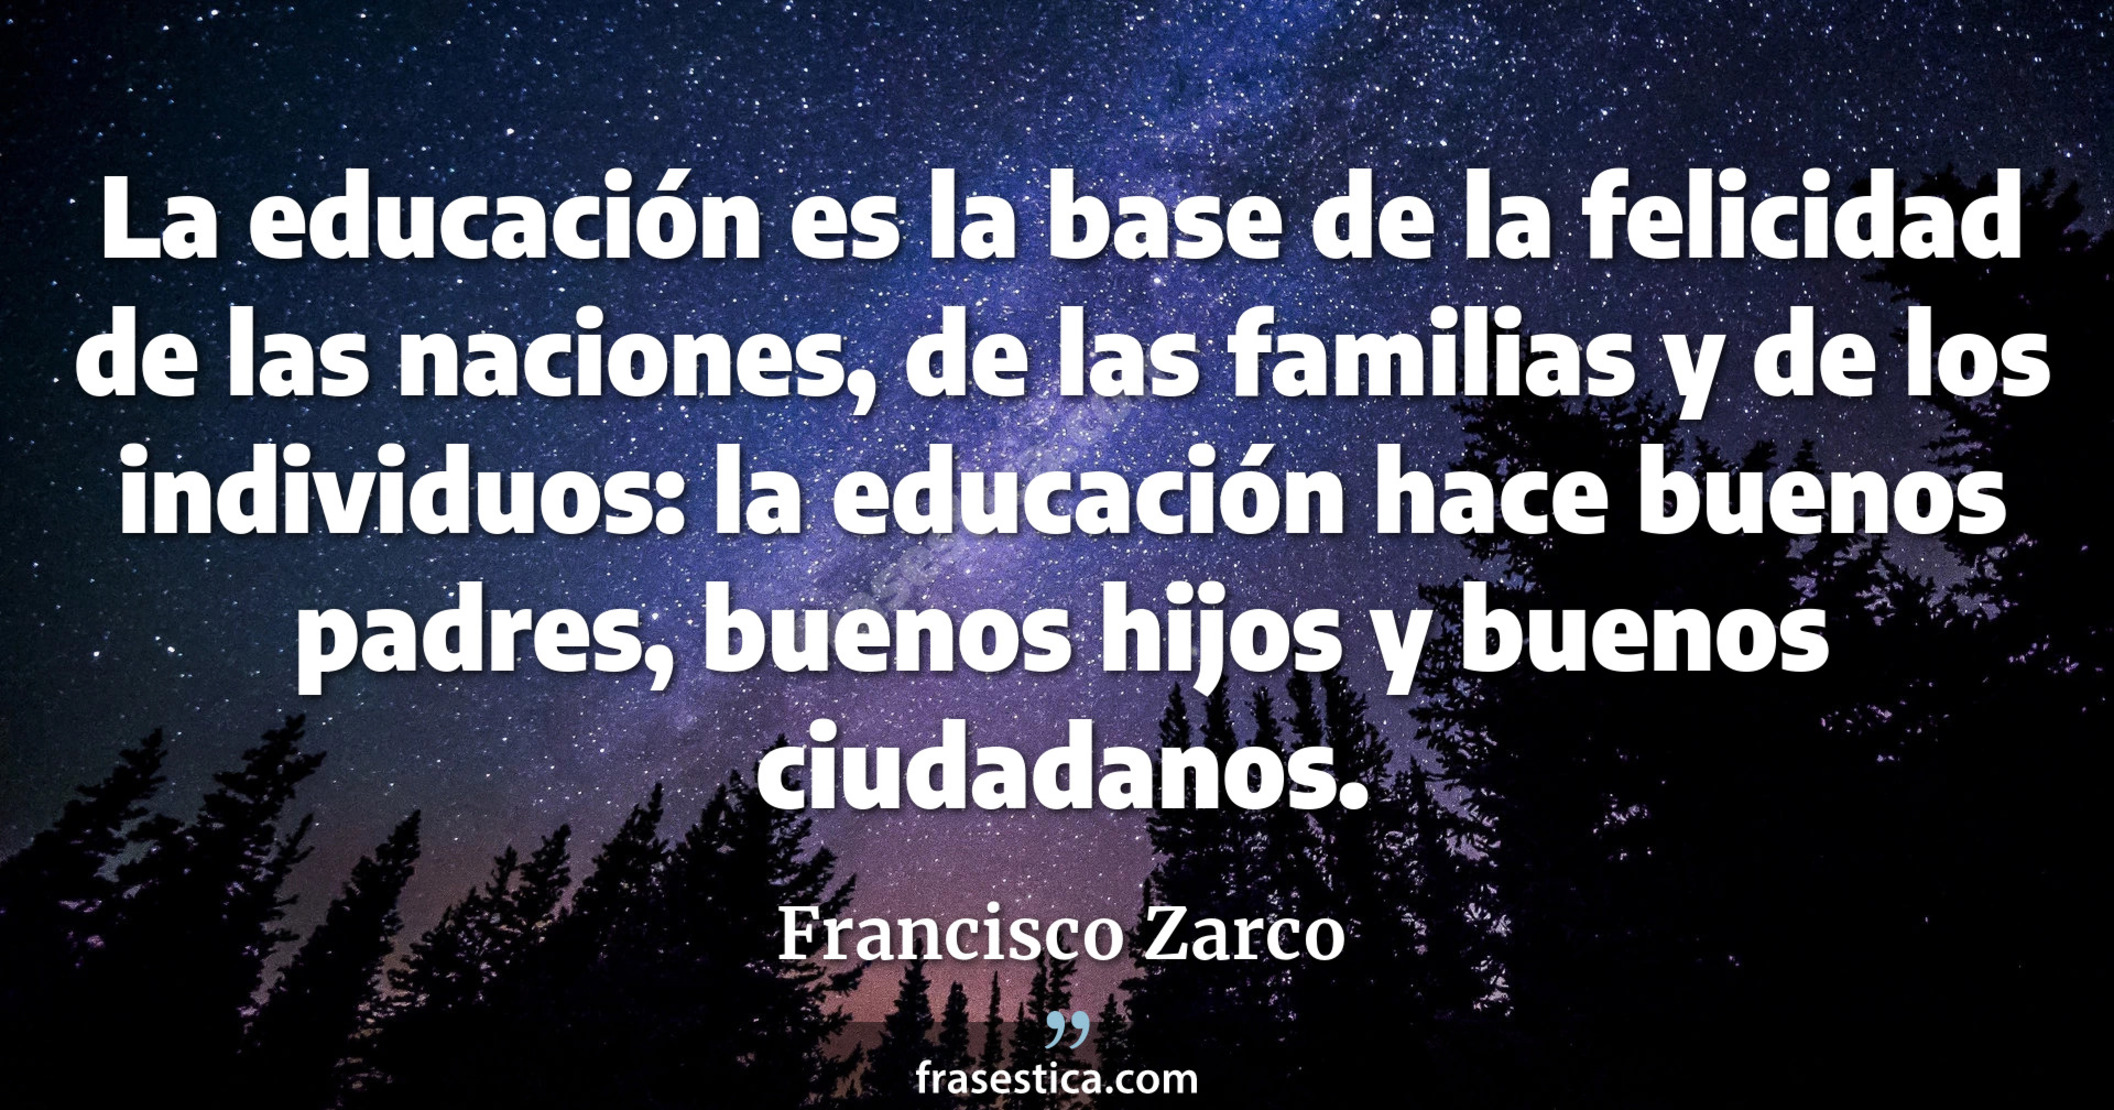 La educación es la base de la felicidad de las naciones, de las familias y de los individuos: la educación hace buenos padres, buenos hijos y buenos ciudadanos. - Francisco Zarco